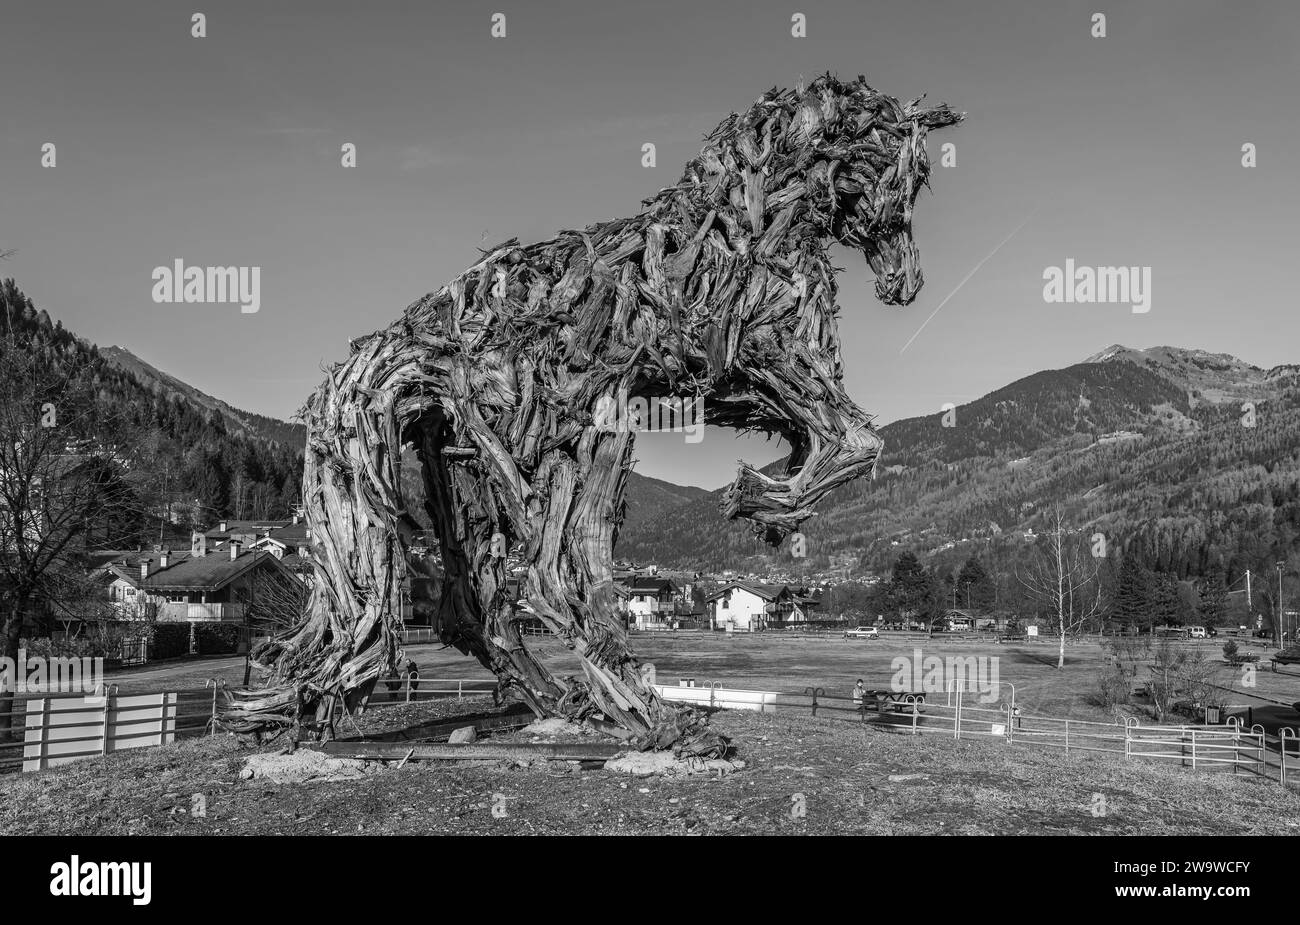 Il grande cavallo di legno dell'artista Marco Martalar a Strembo, paese della provincia di Trento, Trentino alto Adige, Italia settentrionale, Europa, Foto Stock